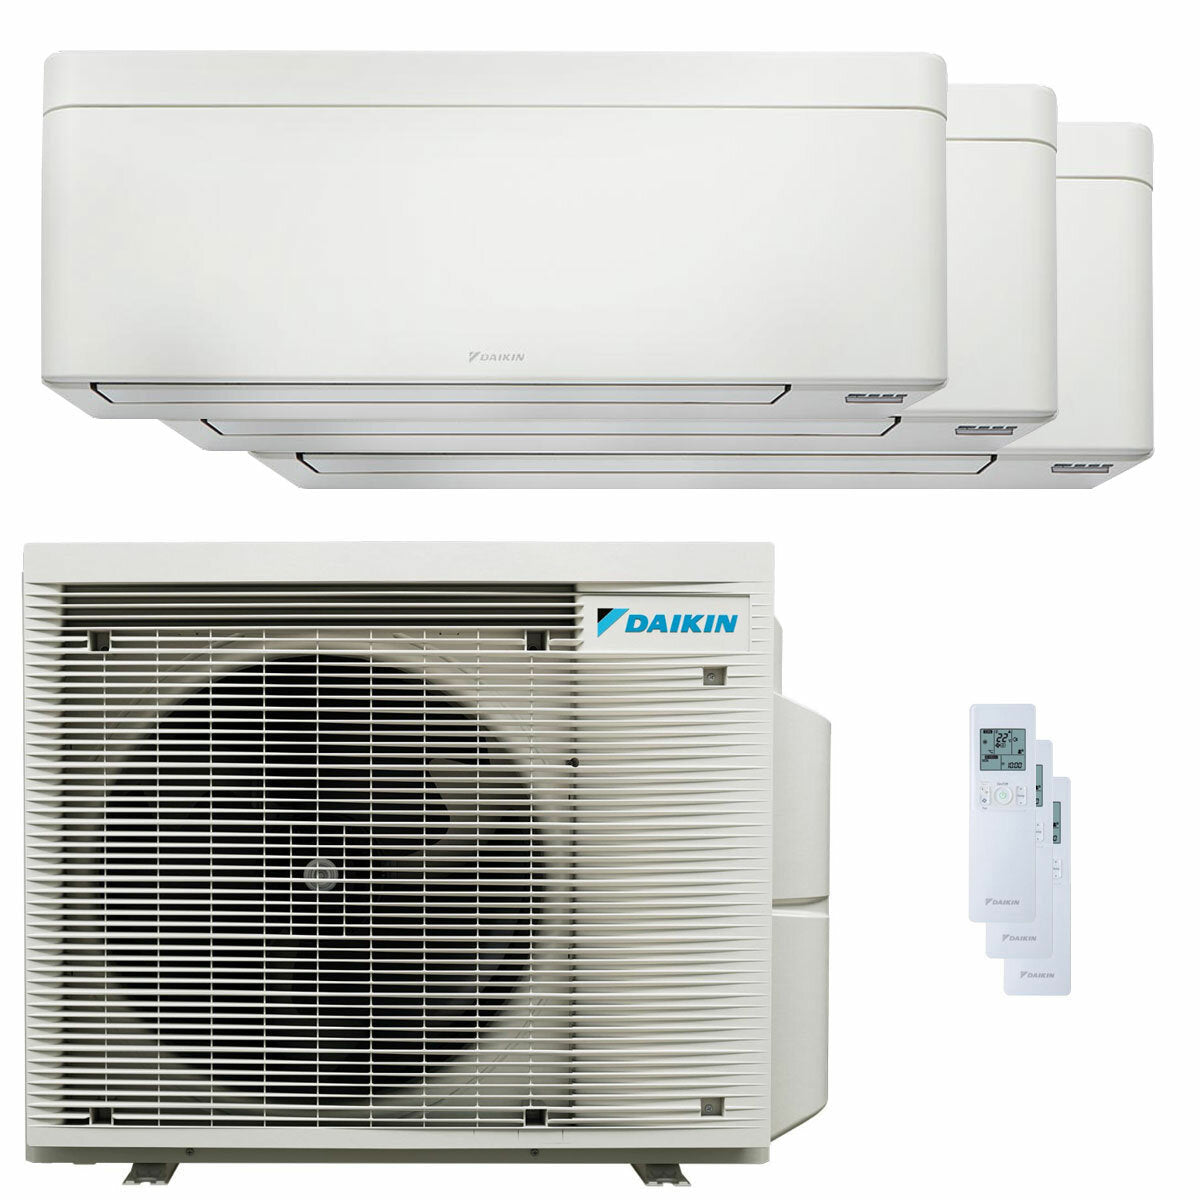 Daikin Stylish White trial split air conditioner 7000+9000+15000 BTU inverter A++ wifi external unit 6.8 kW